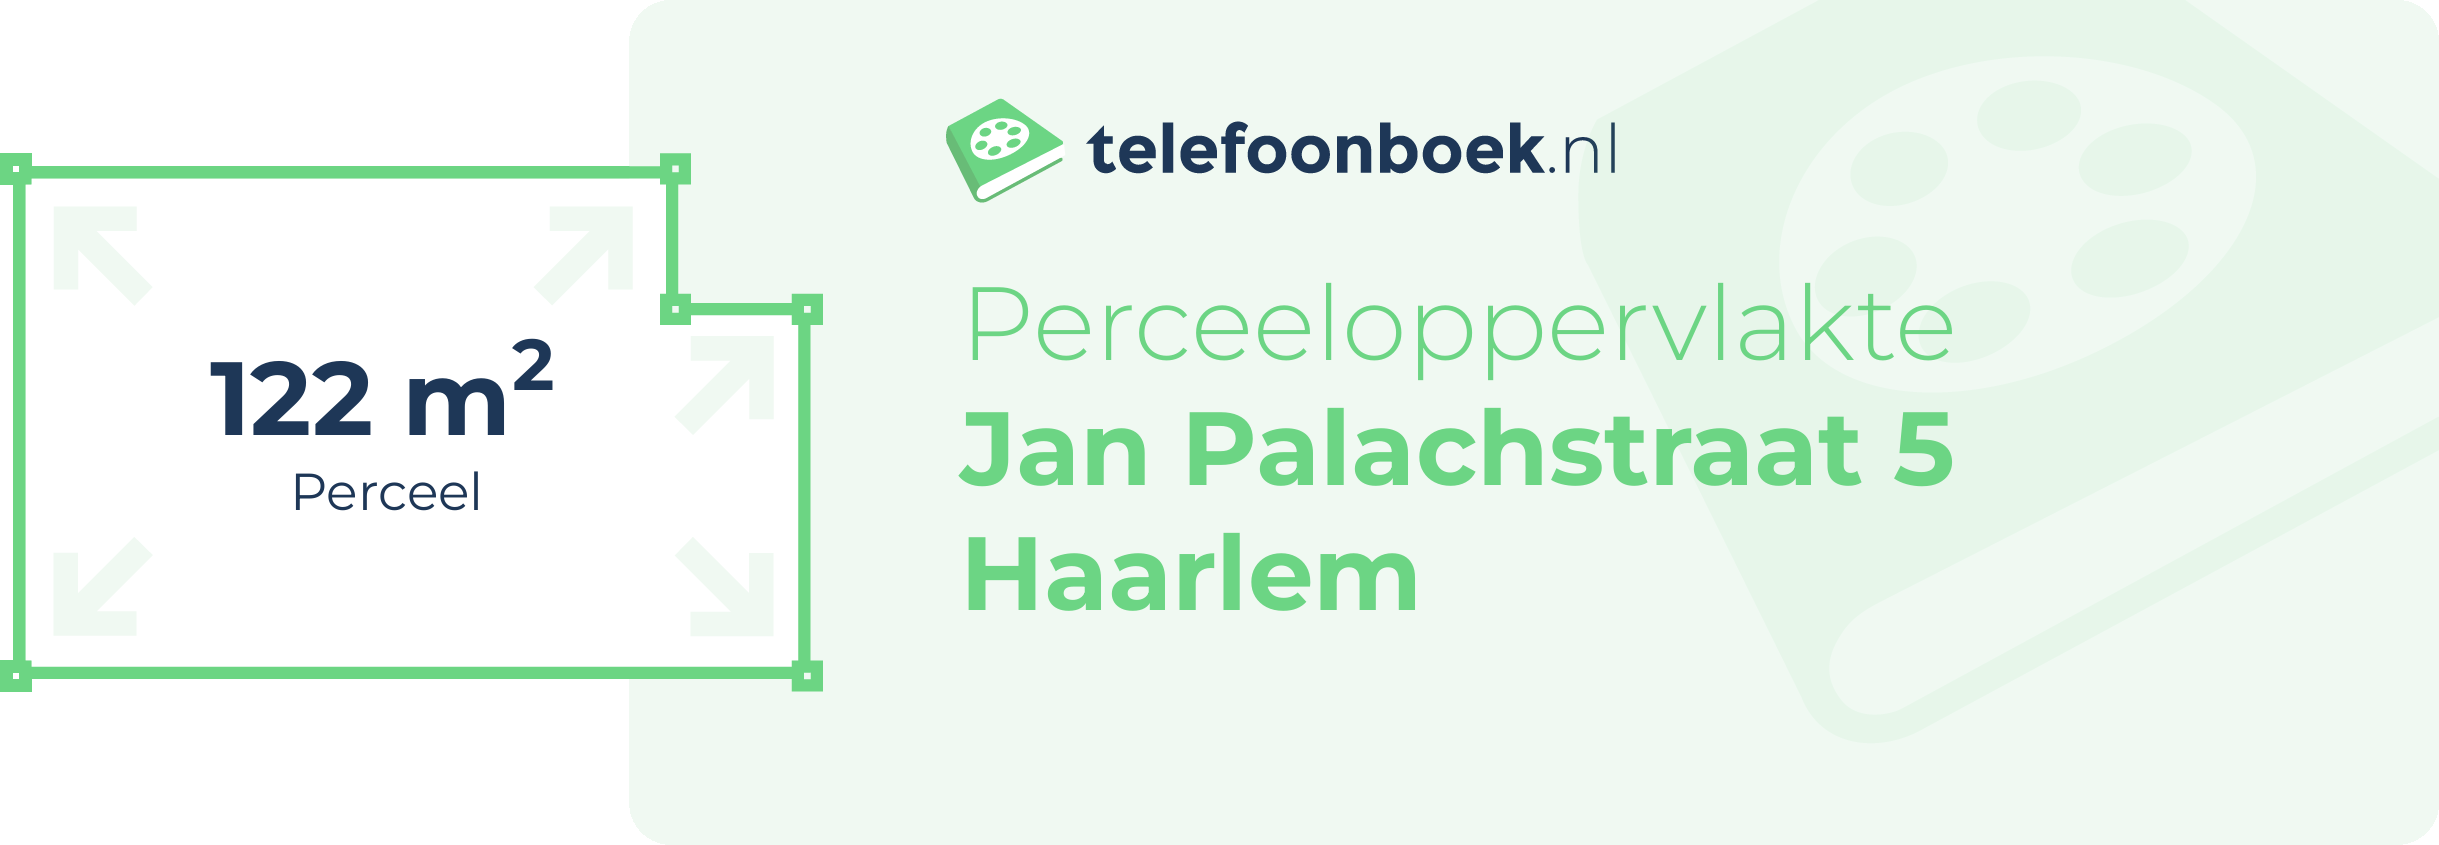 Perceeloppervlakte Jan Palachstraat 5 Haarlem